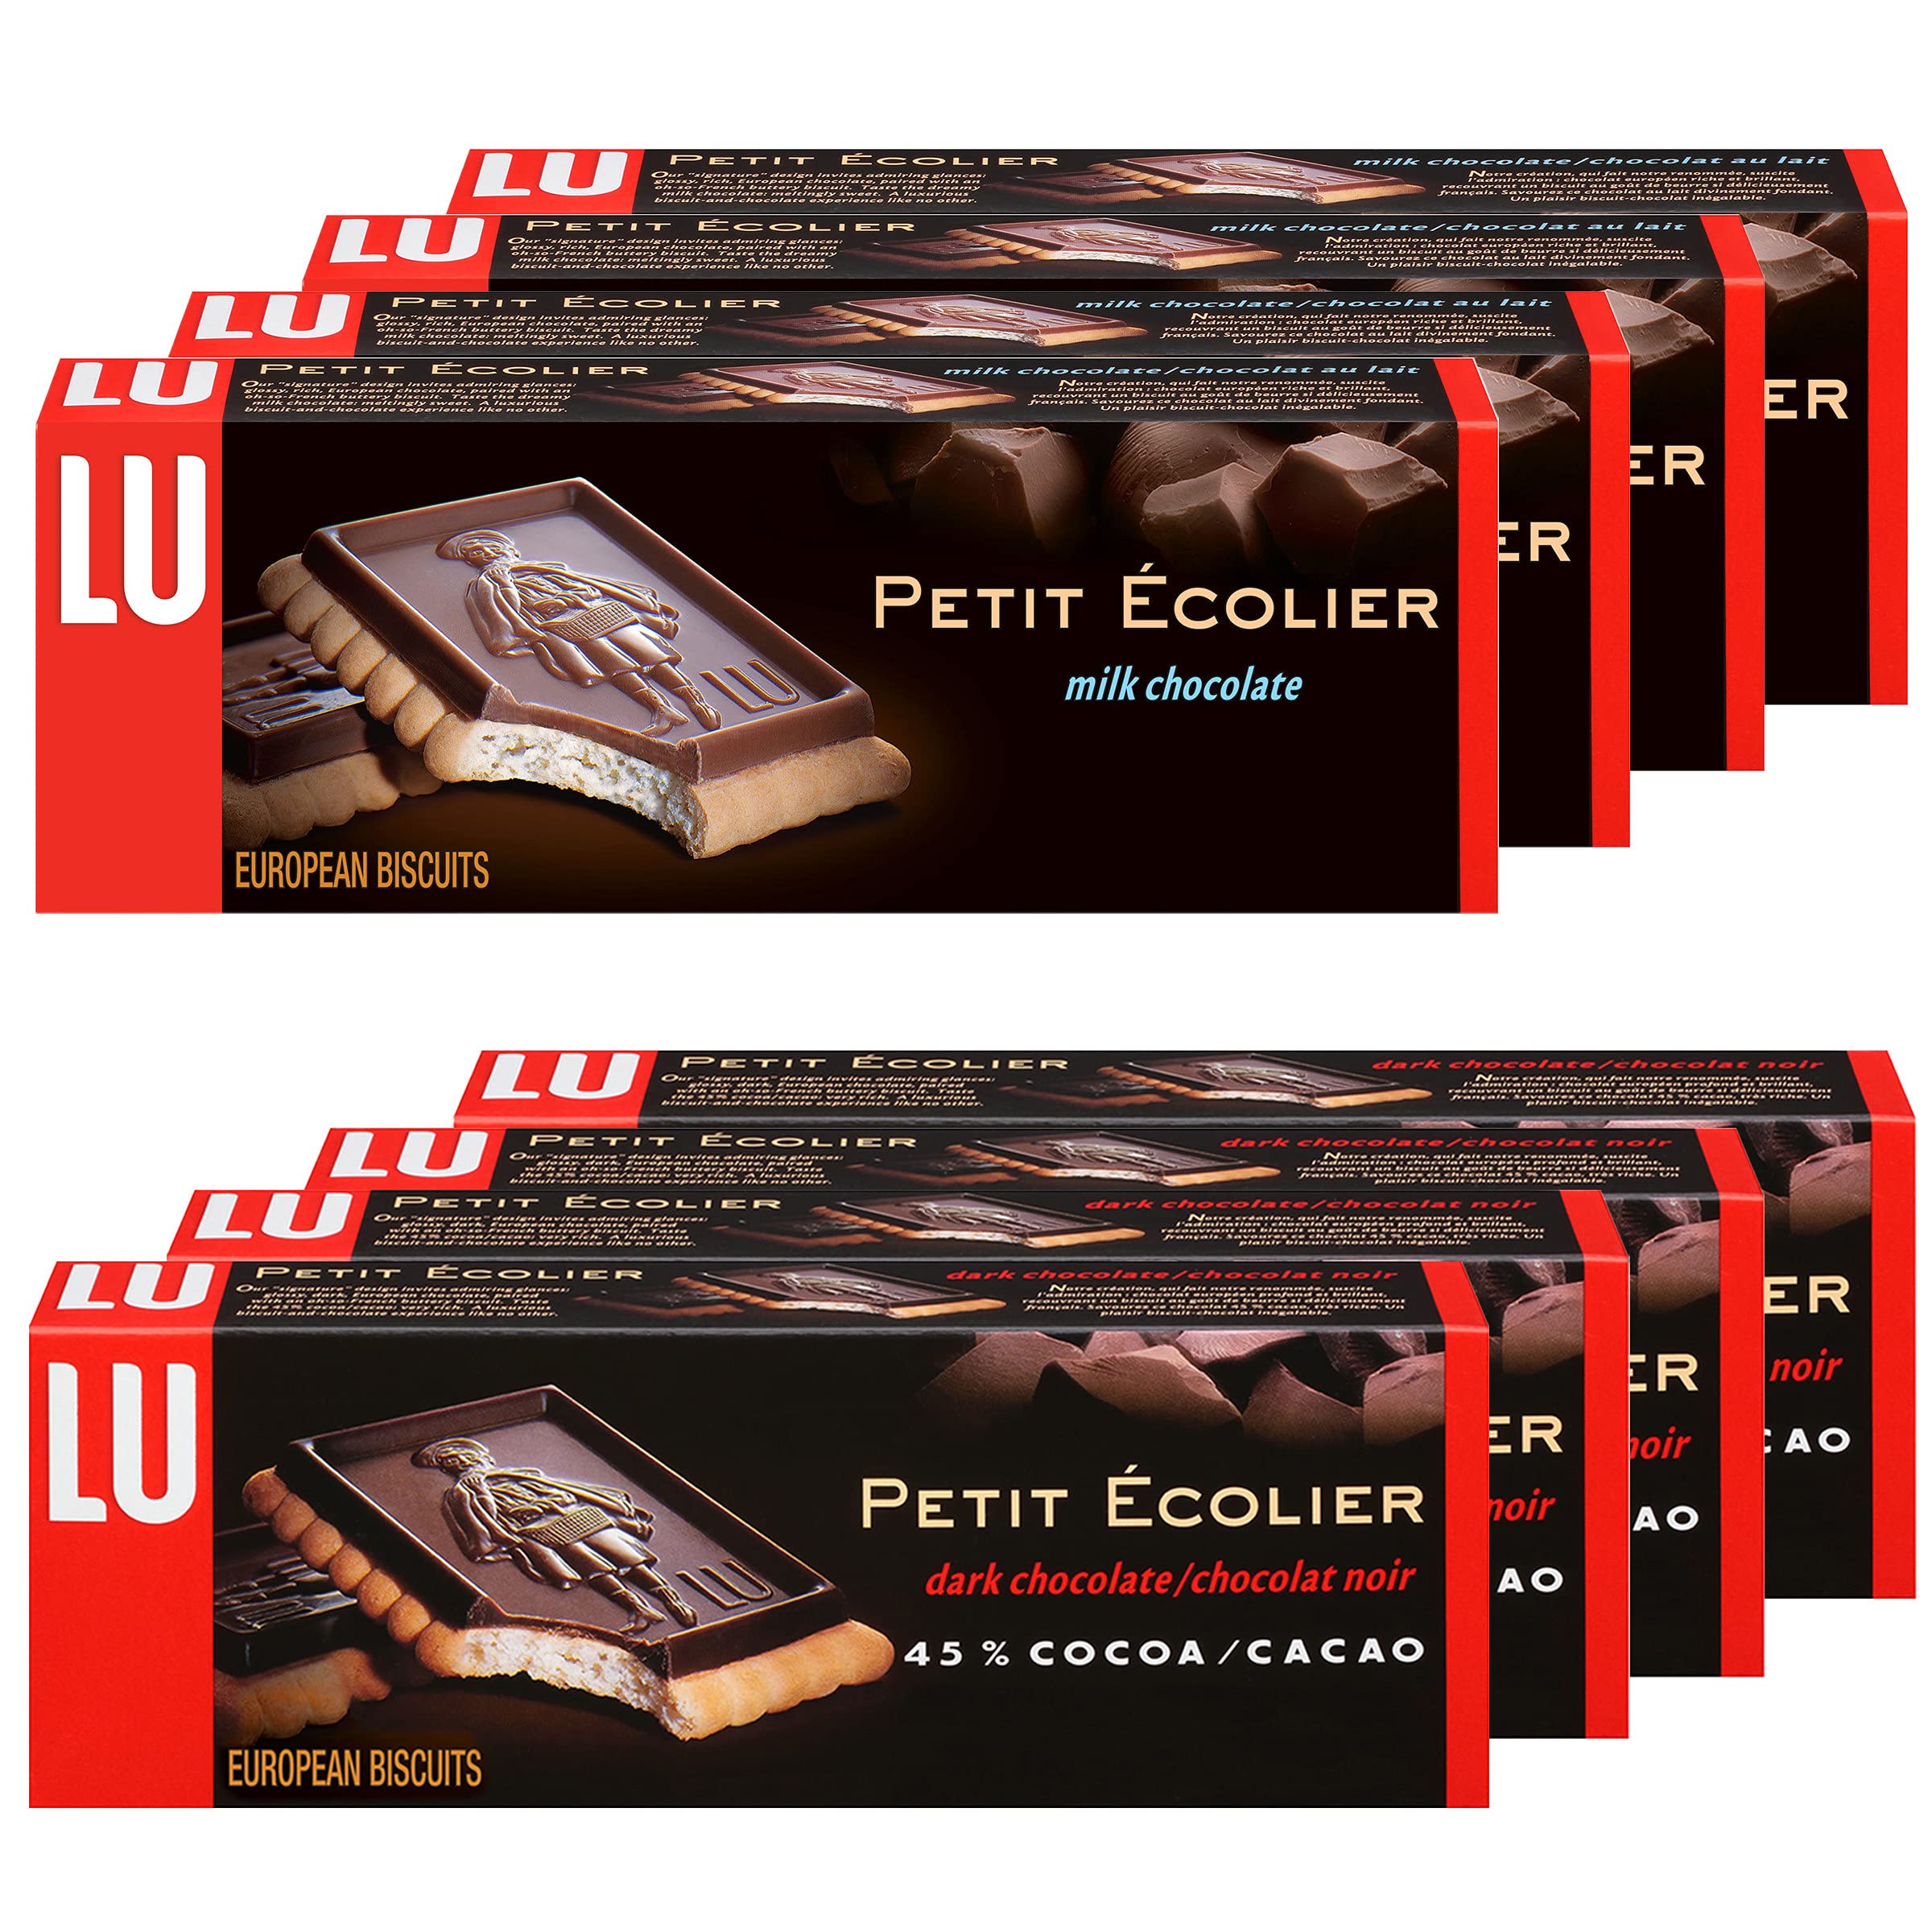 LU European Biscuits, Le Petit Beurre, Cookies